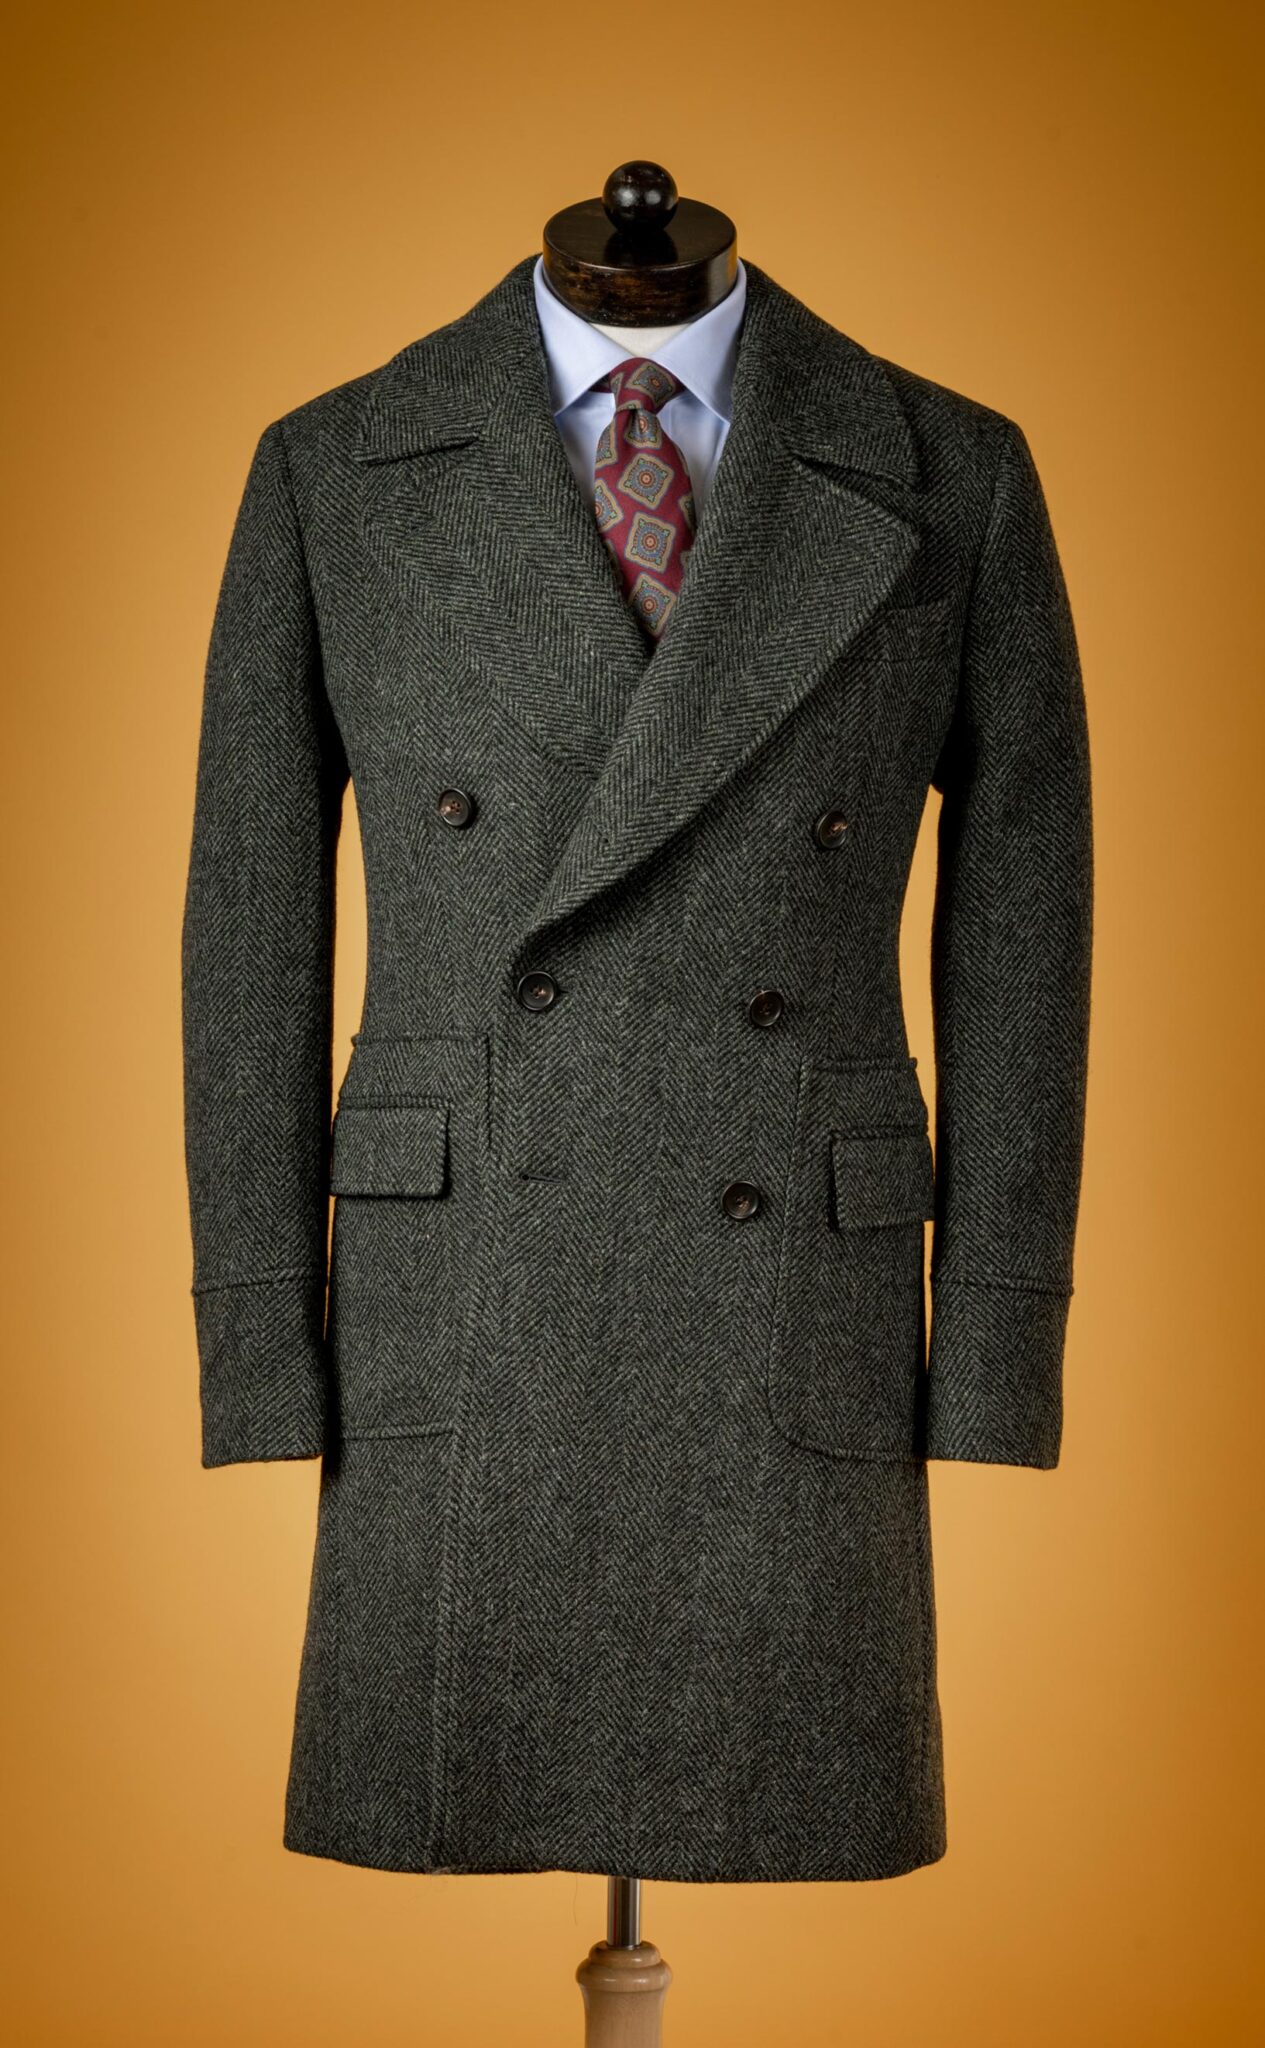 Heavy Tweed Polo Coats from Spier & Mackay – Menswear Musings